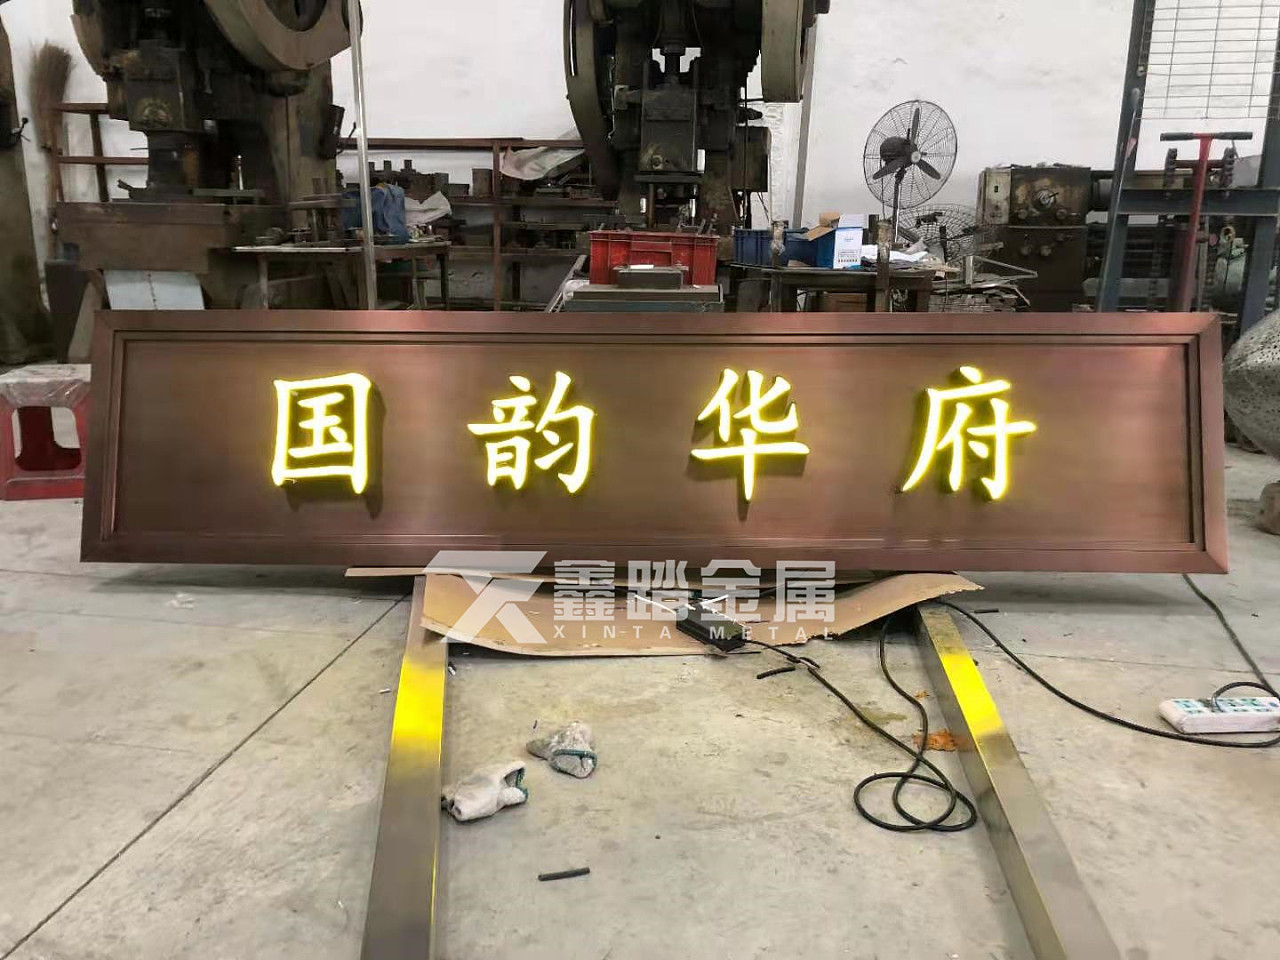 中式红古铜不锈钢牌匾 房地产门头不锈钢发光字体牌匾